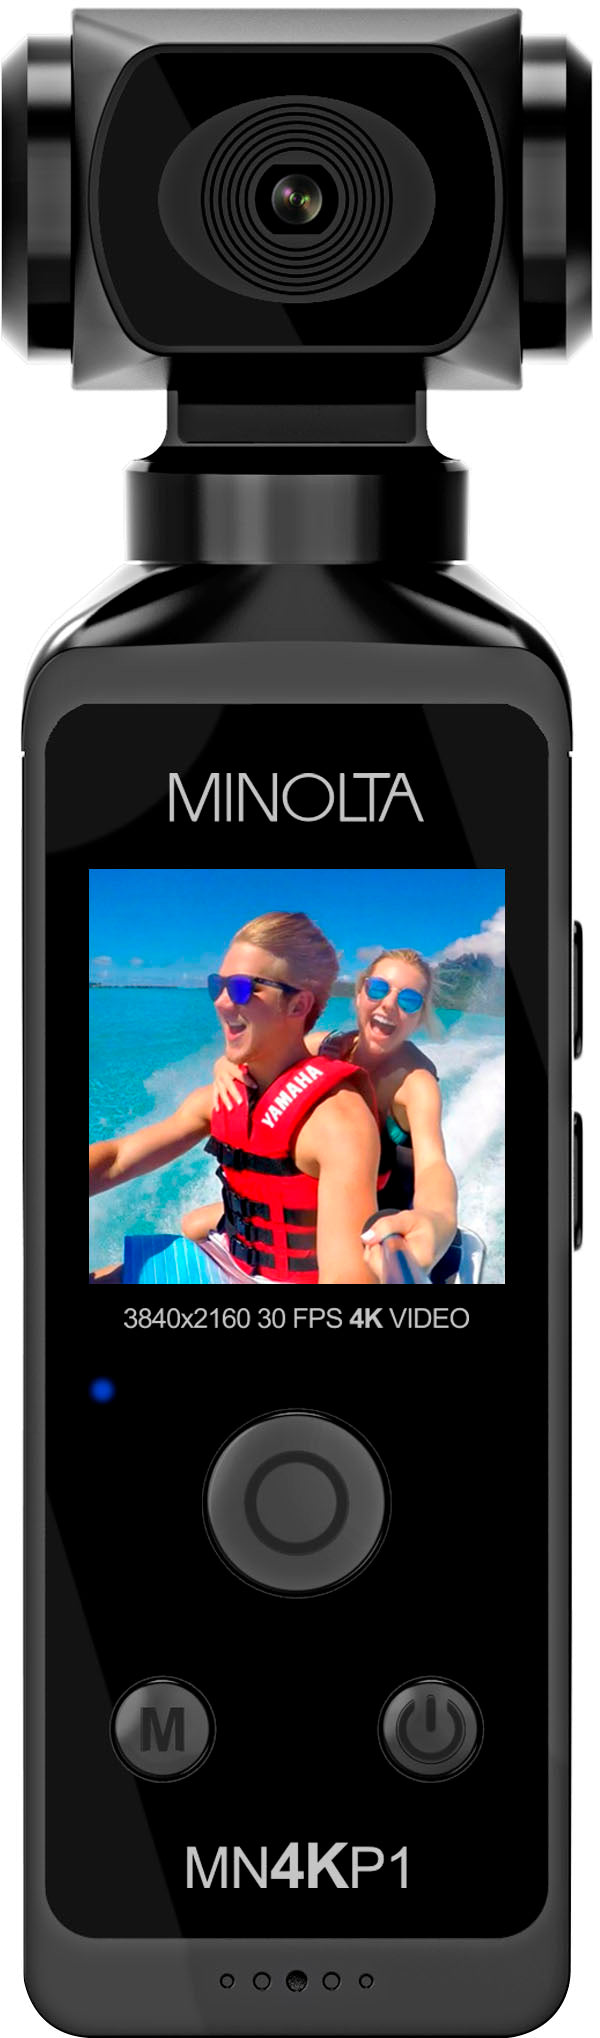 Konica Minolta - MN4KP1 4K Ultra HD WiFi Camcorder Kit - Black_0